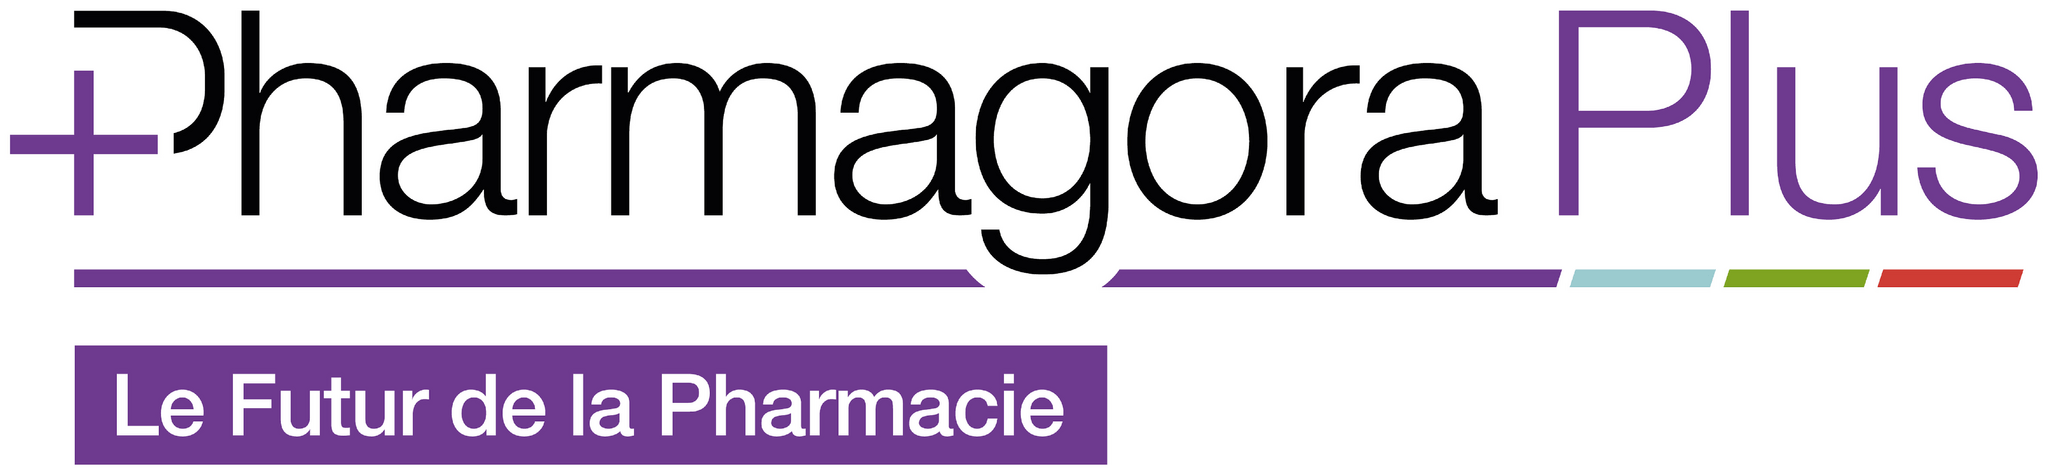 Pharmagoraplus Paris Uluslararası Medikal, Sağlık, İlaç Sanayii Fuarı